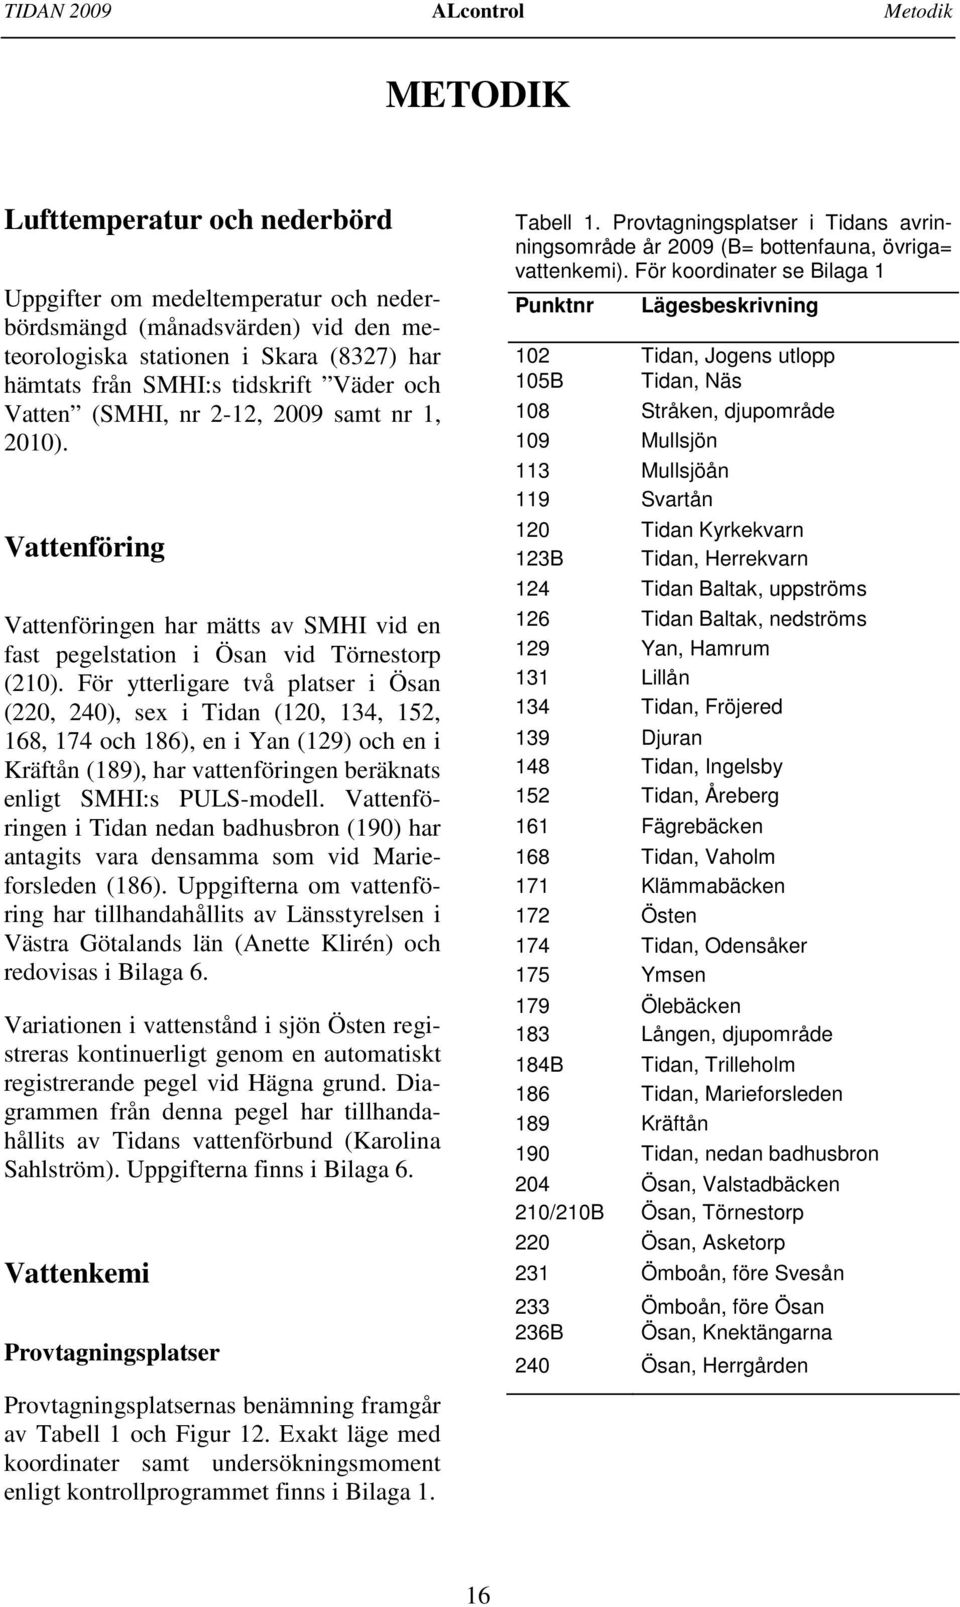 För ytterligare två platser i Ösan (22, 24), sex i Tidan (12, 134, 152, 168, 174 och 186), en i Yan (129) och en i Kräftån (189), har vattenföringen beräknats enligt SMHI:s PULS-modell.